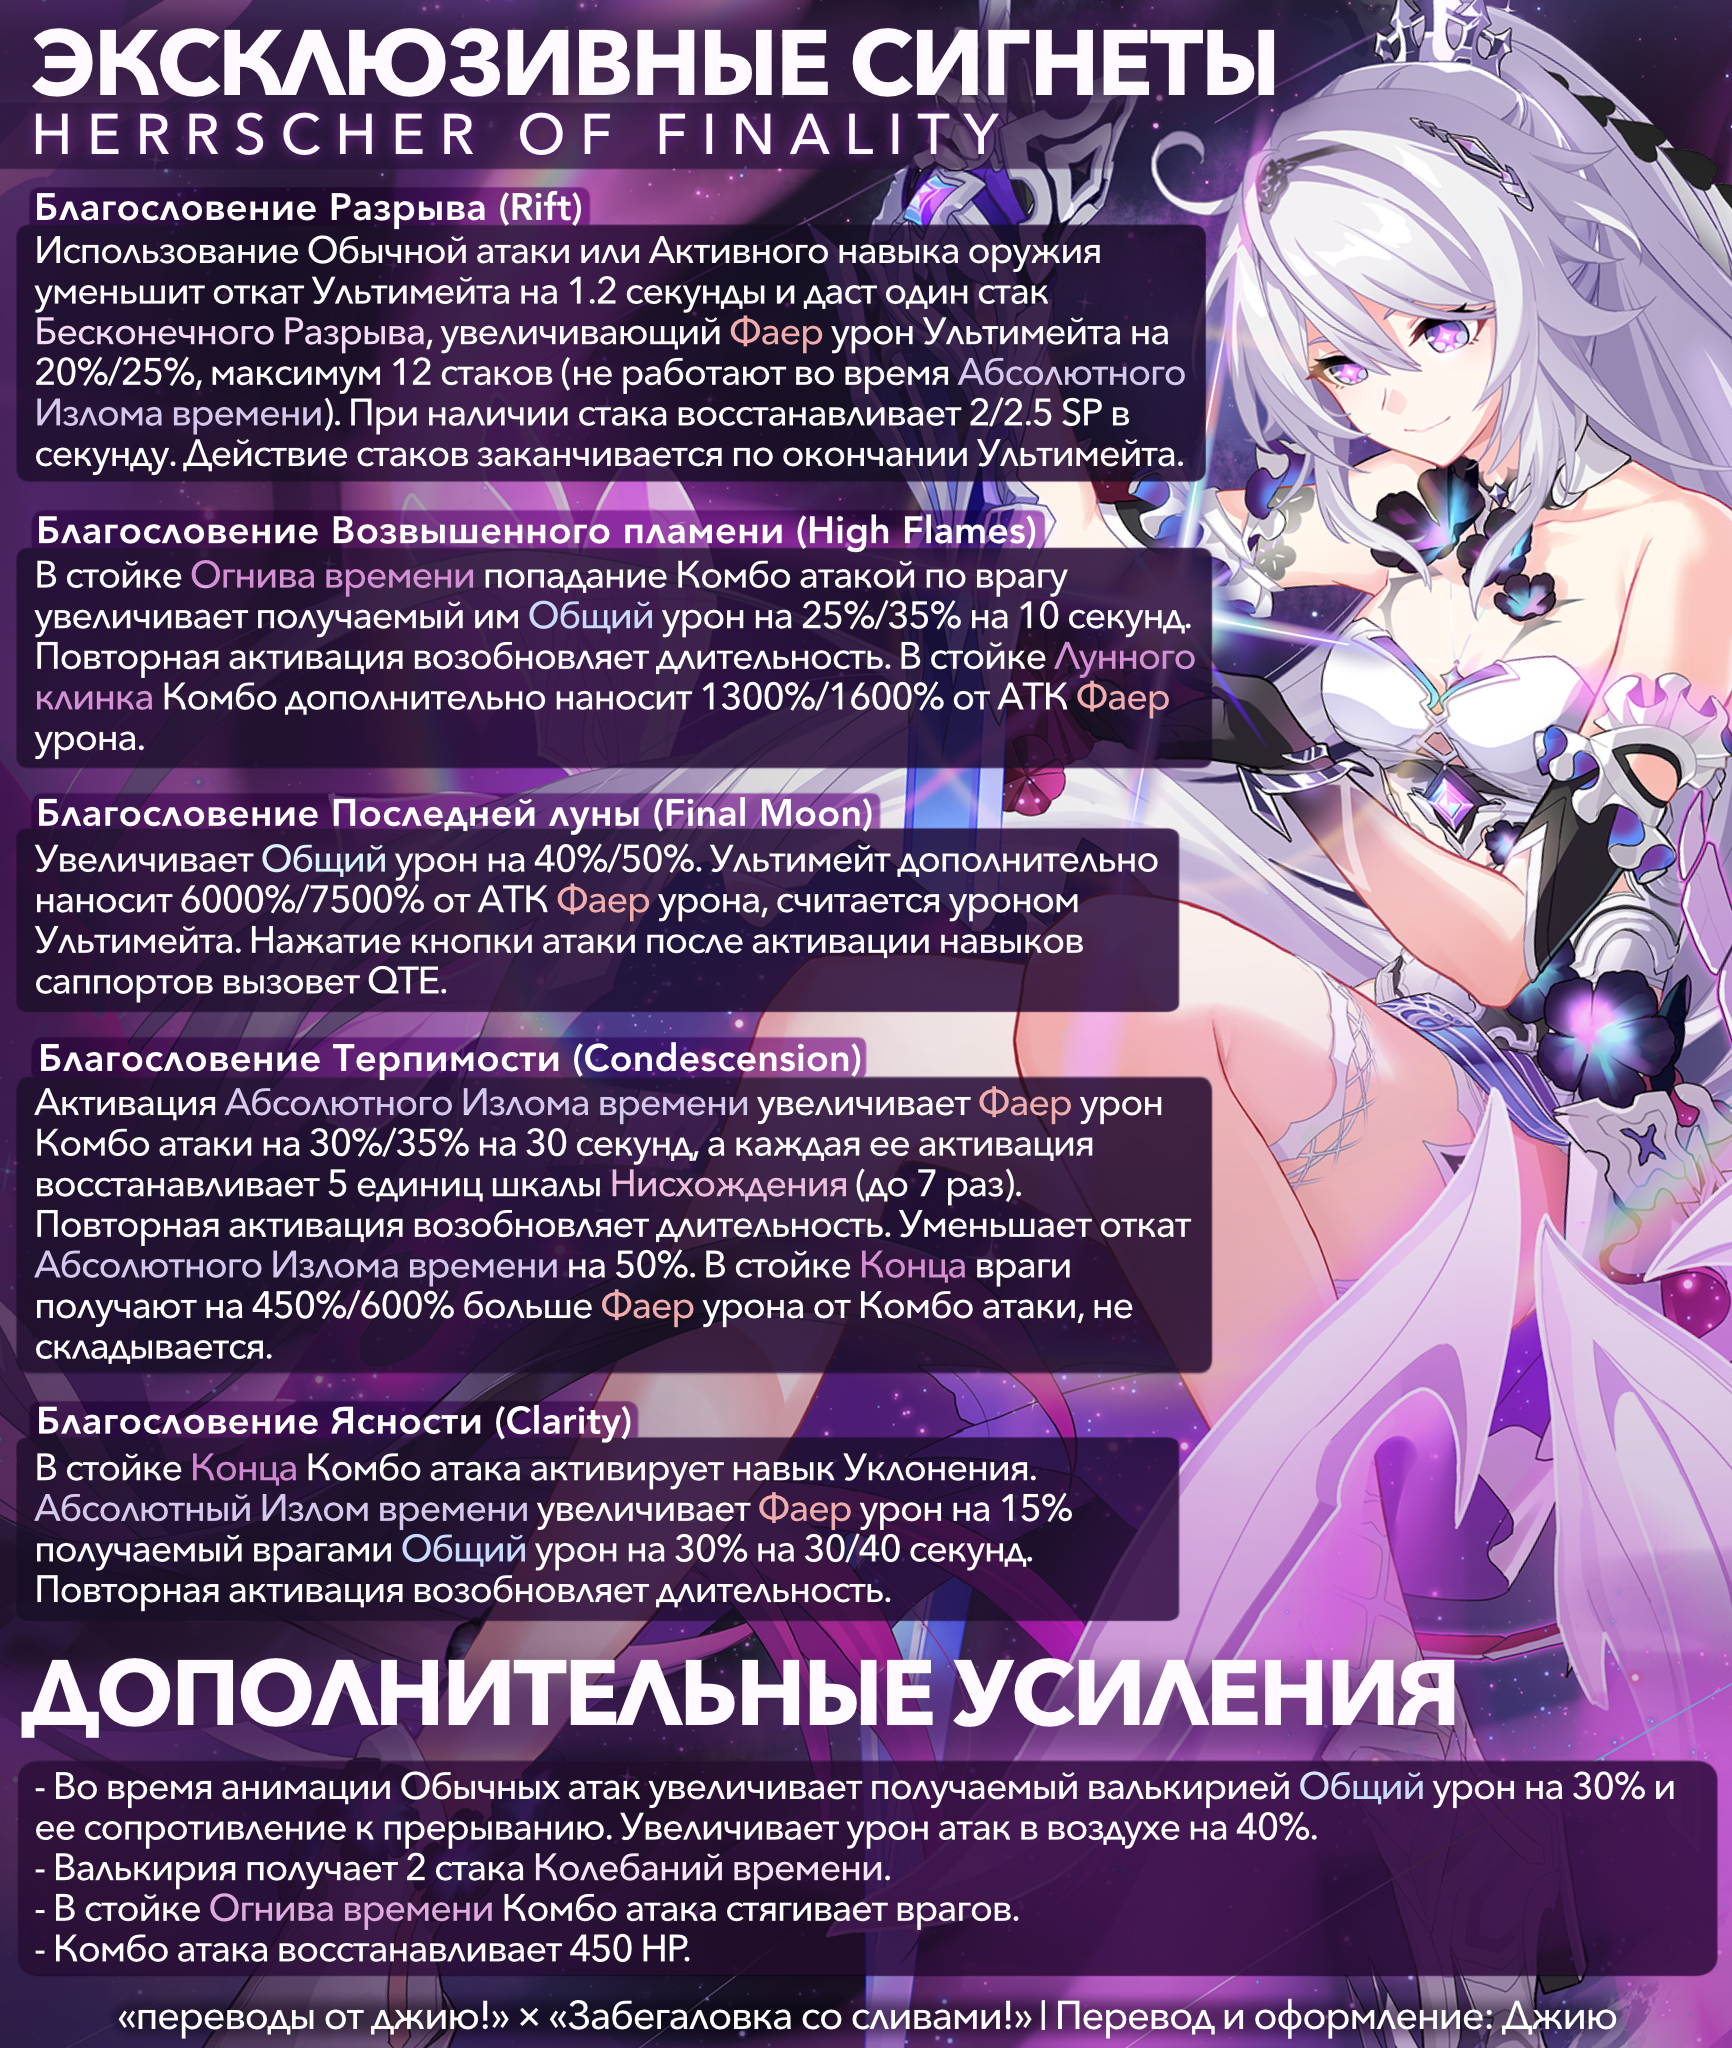 Leave channel перевод на русский в телеграмме фото 22